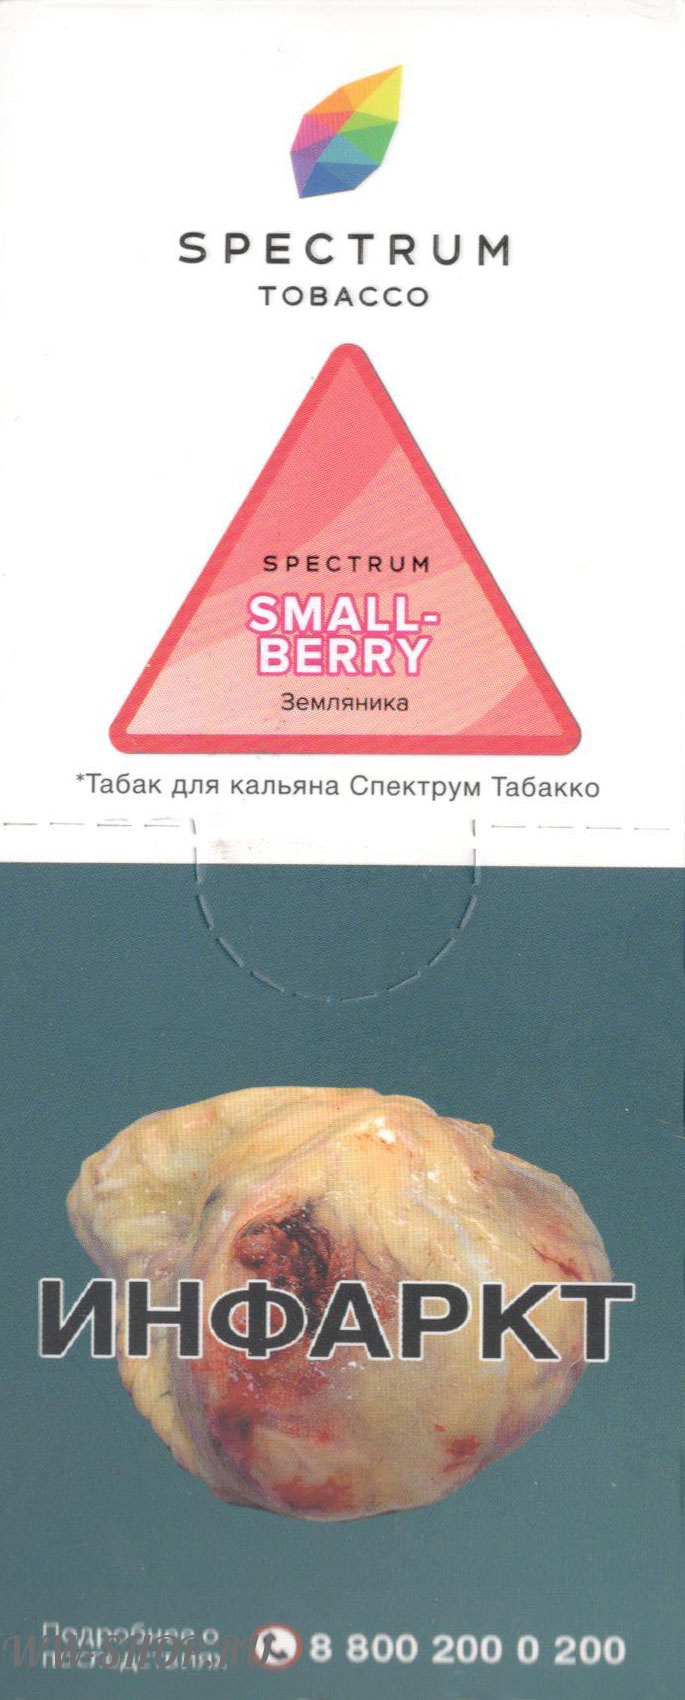 spectrum- земляника (smallberry) Волгоград